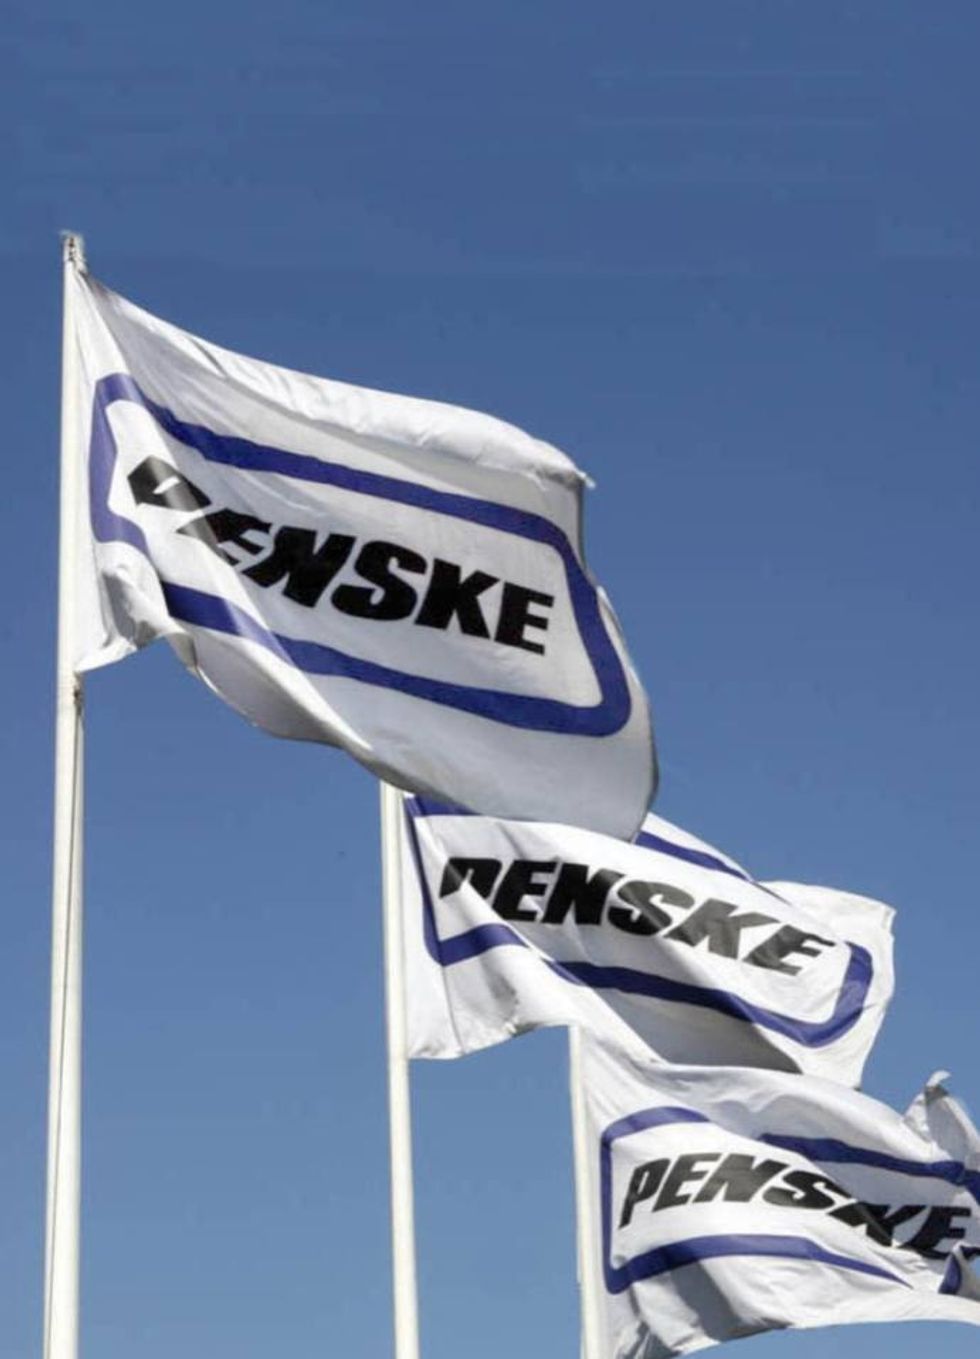 
Penske Logistics Opens New Office in Düsseldorf, Germany
